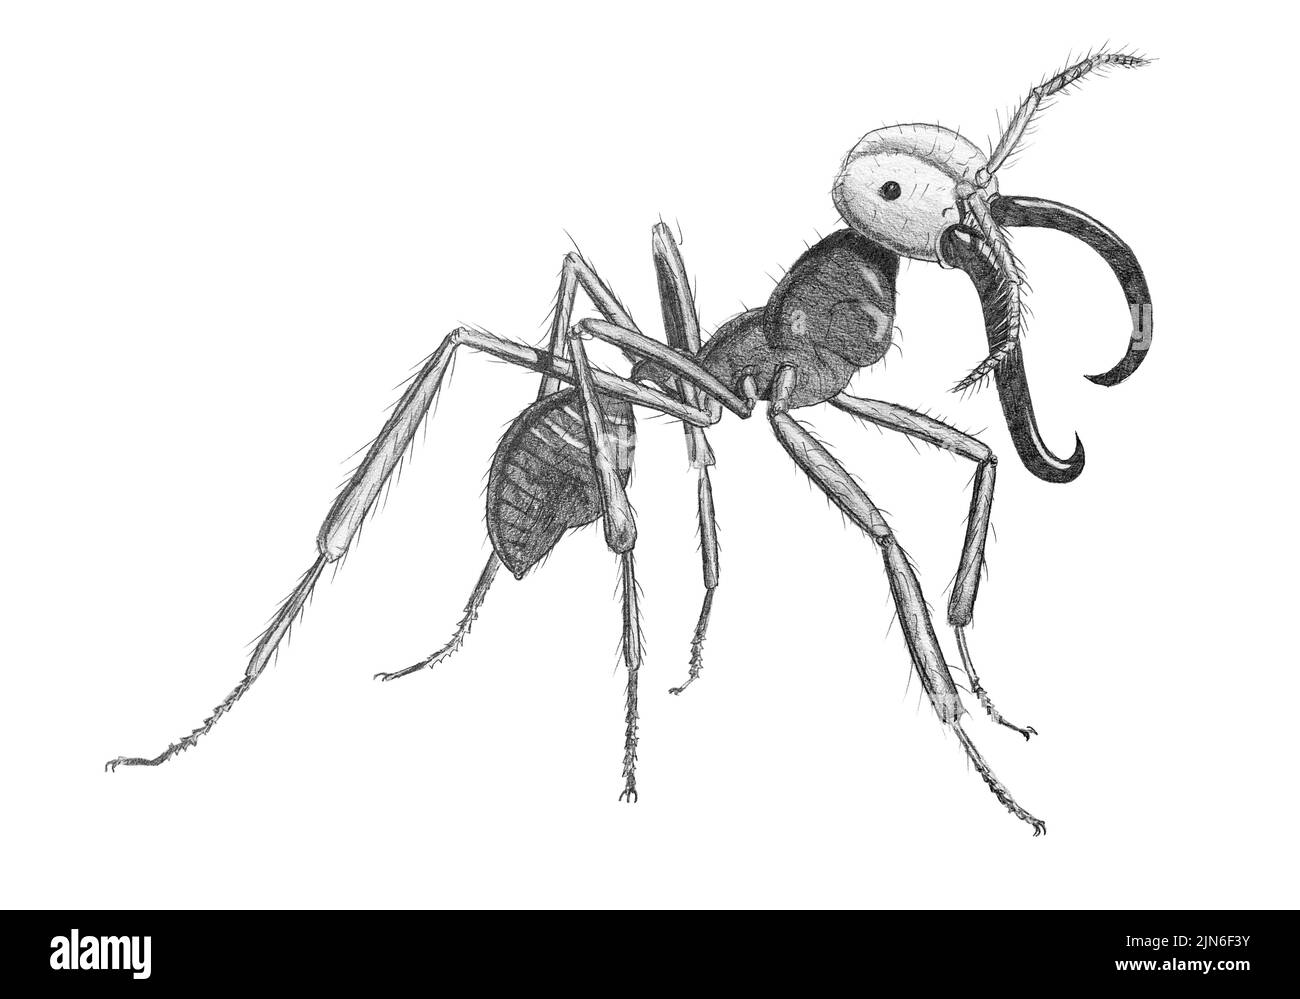 Dibujo a lápiz de una hormiga militar en la espalda blanca Foto de stock